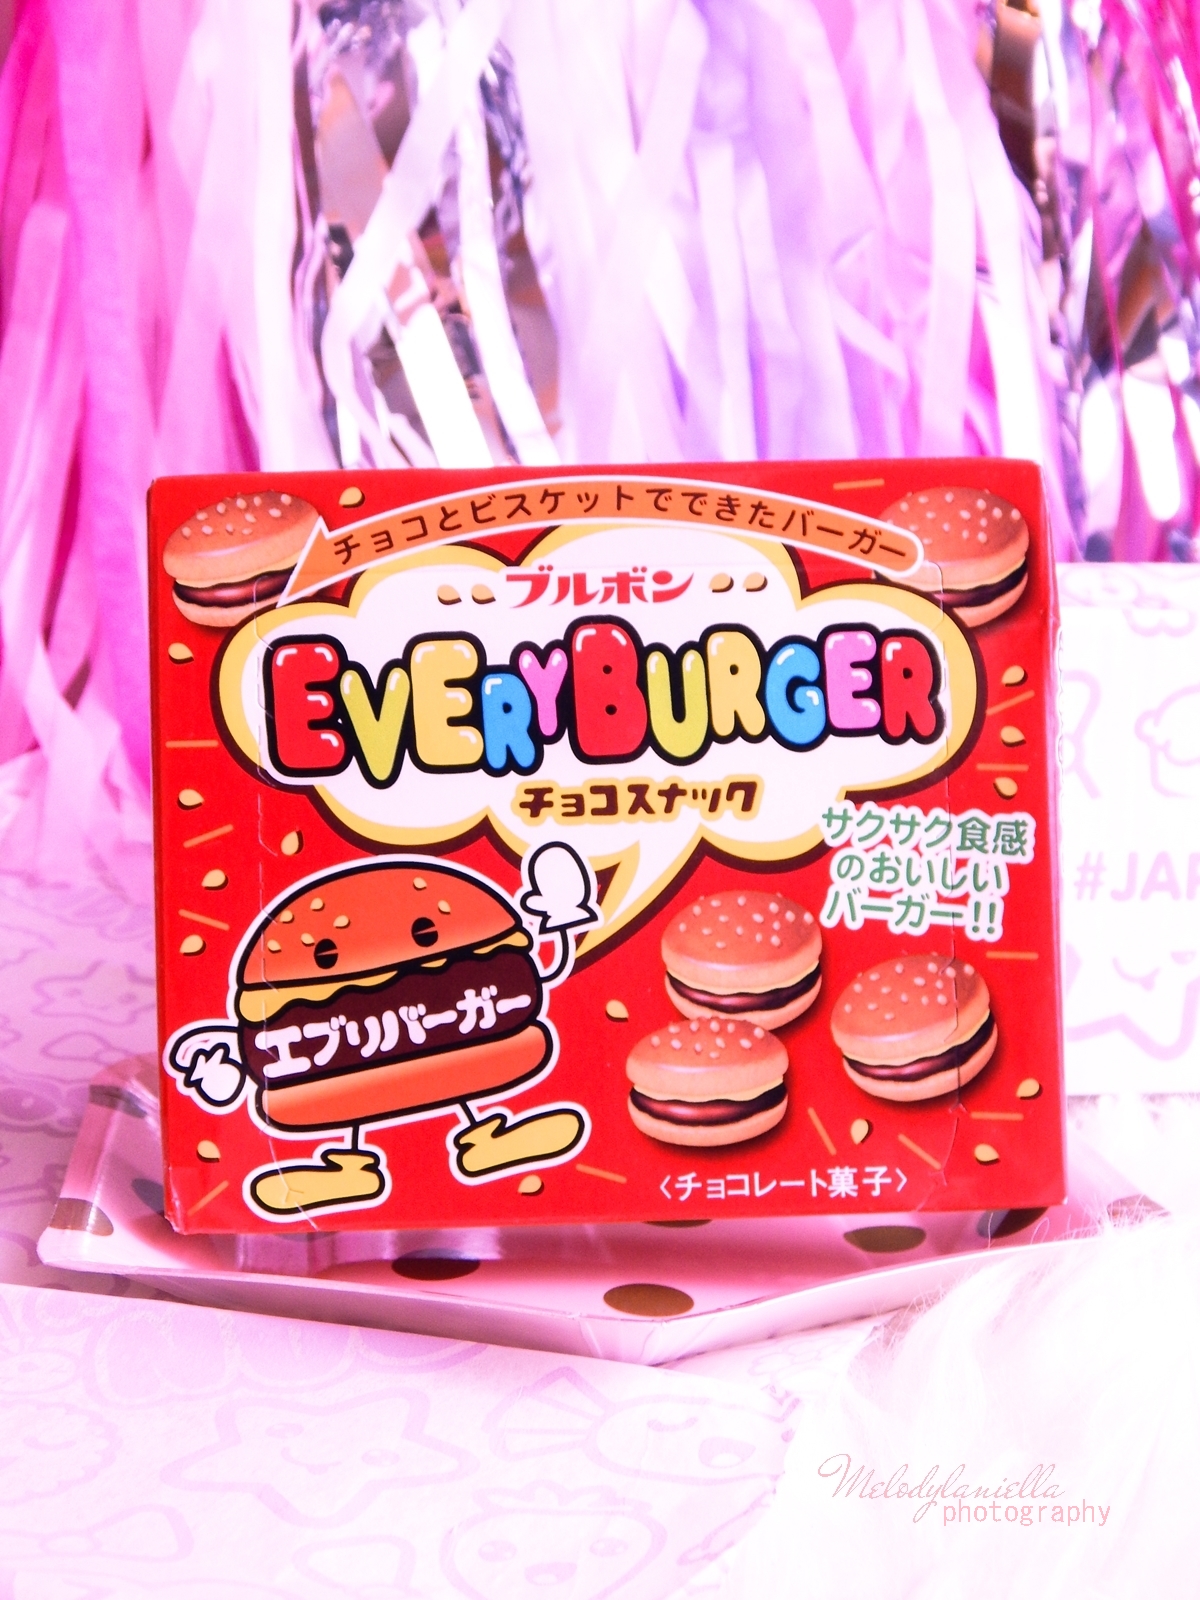 7 melodylaniella photography partybox japan candy box pudełko pełne słodkości z japonii azjatyckie słodycze ciekawe jedzenie z japonii cukierki z azji boxy z jedzeniem bourbon every burger chocolate cook